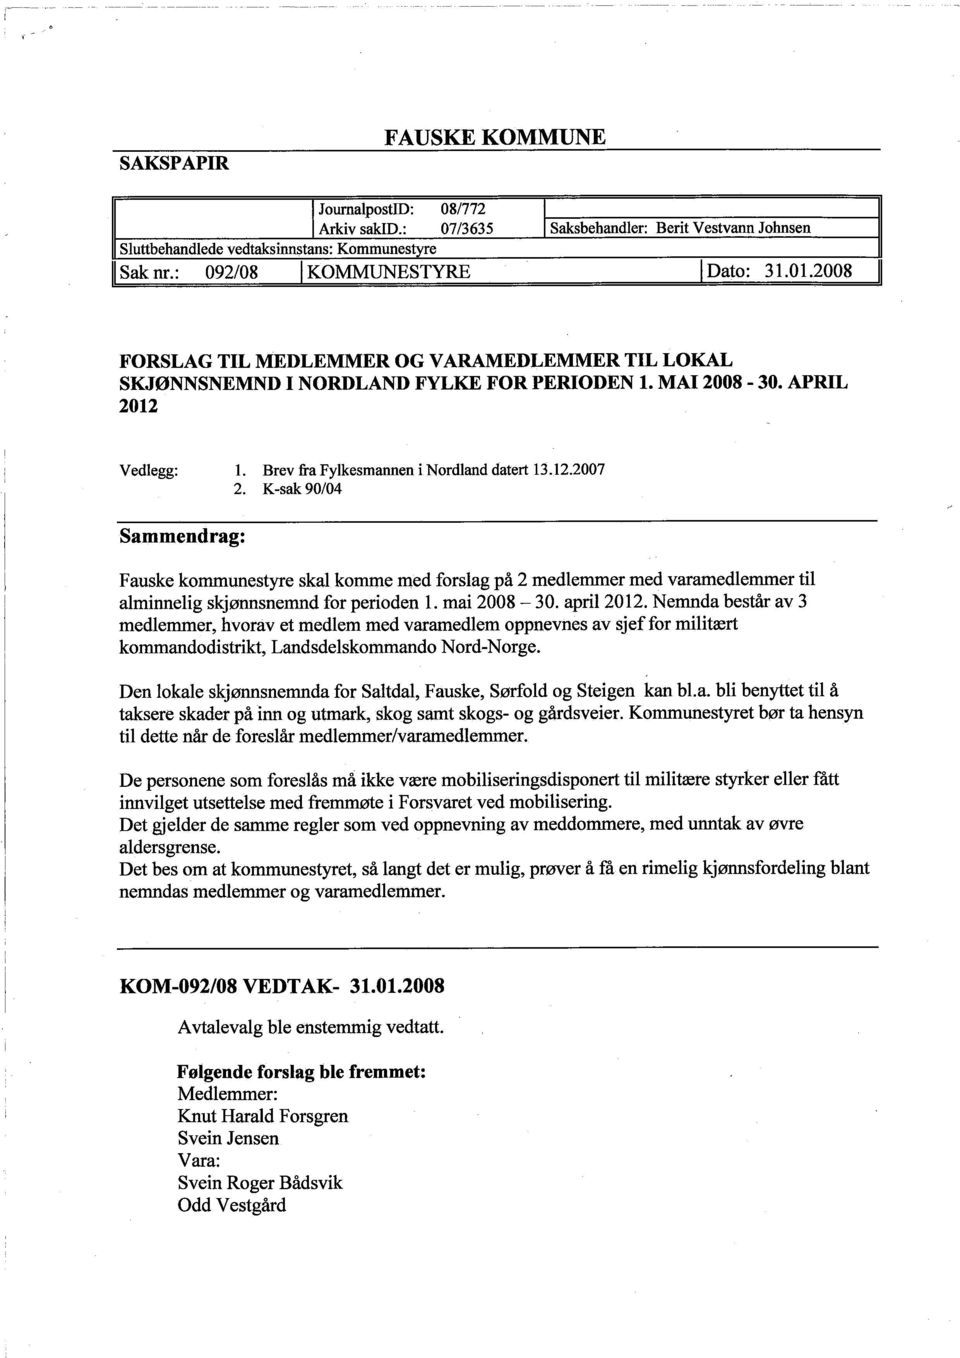 K-sak 90/04 Sammendrag: Fauske kommunestyre skal komme med forslag på 2 medlemmer med varamedlemmer til alminnelig siqønnsnemnd for perioden L. mai 2008-30. april 2012.